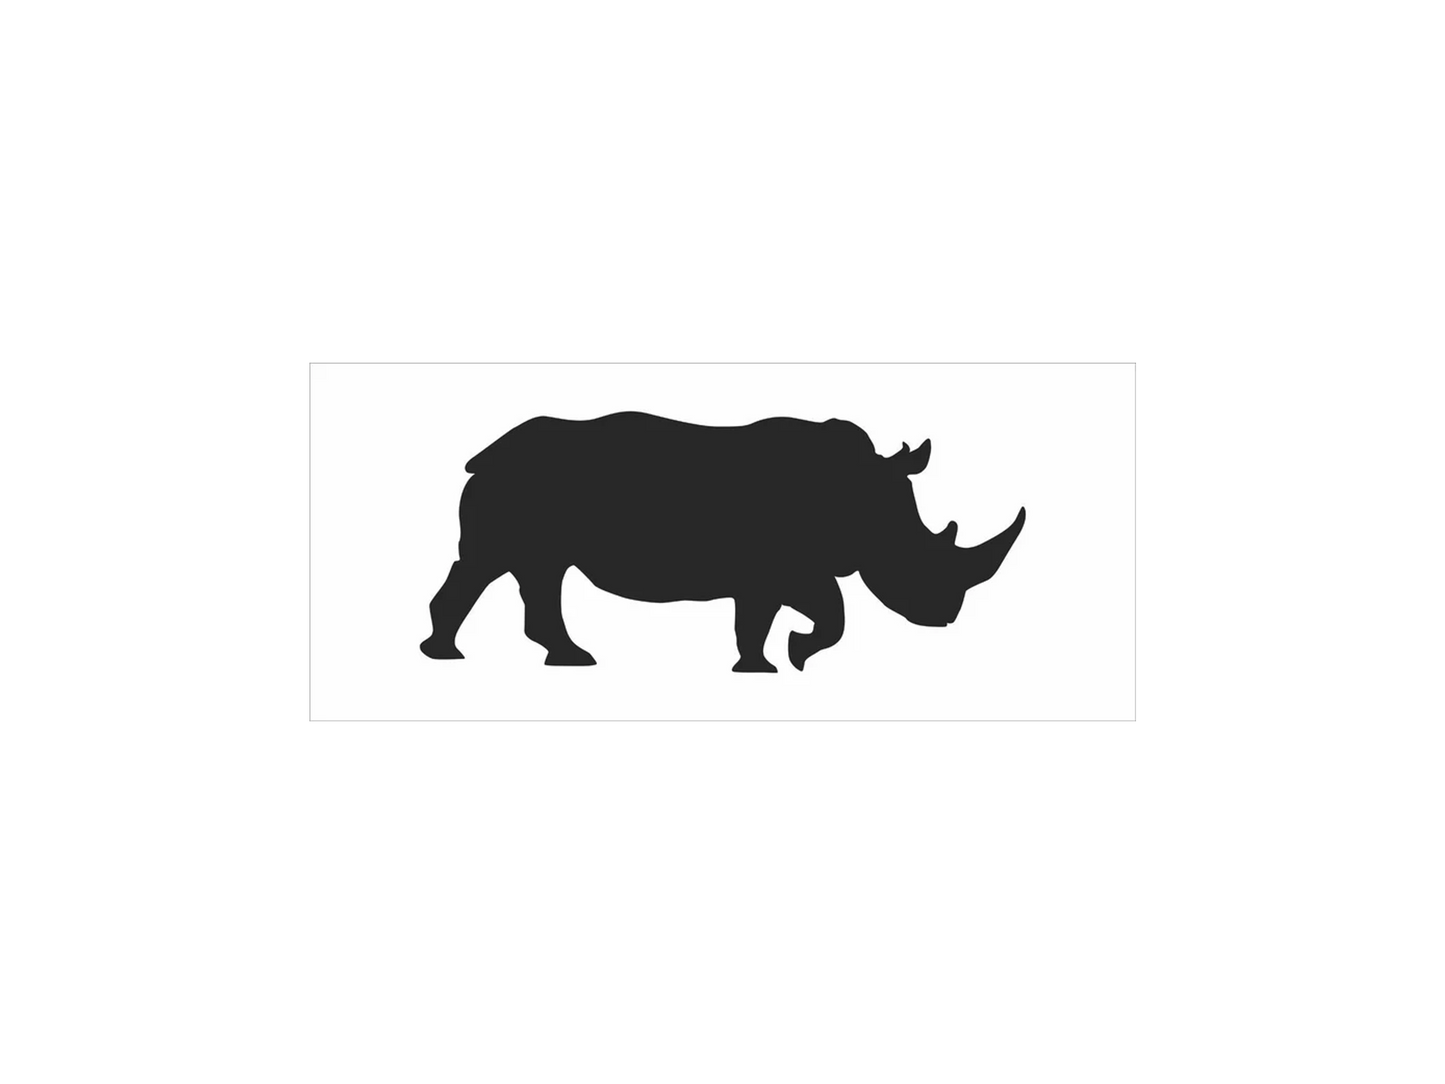 Rhino Stencil - Superior Stencils